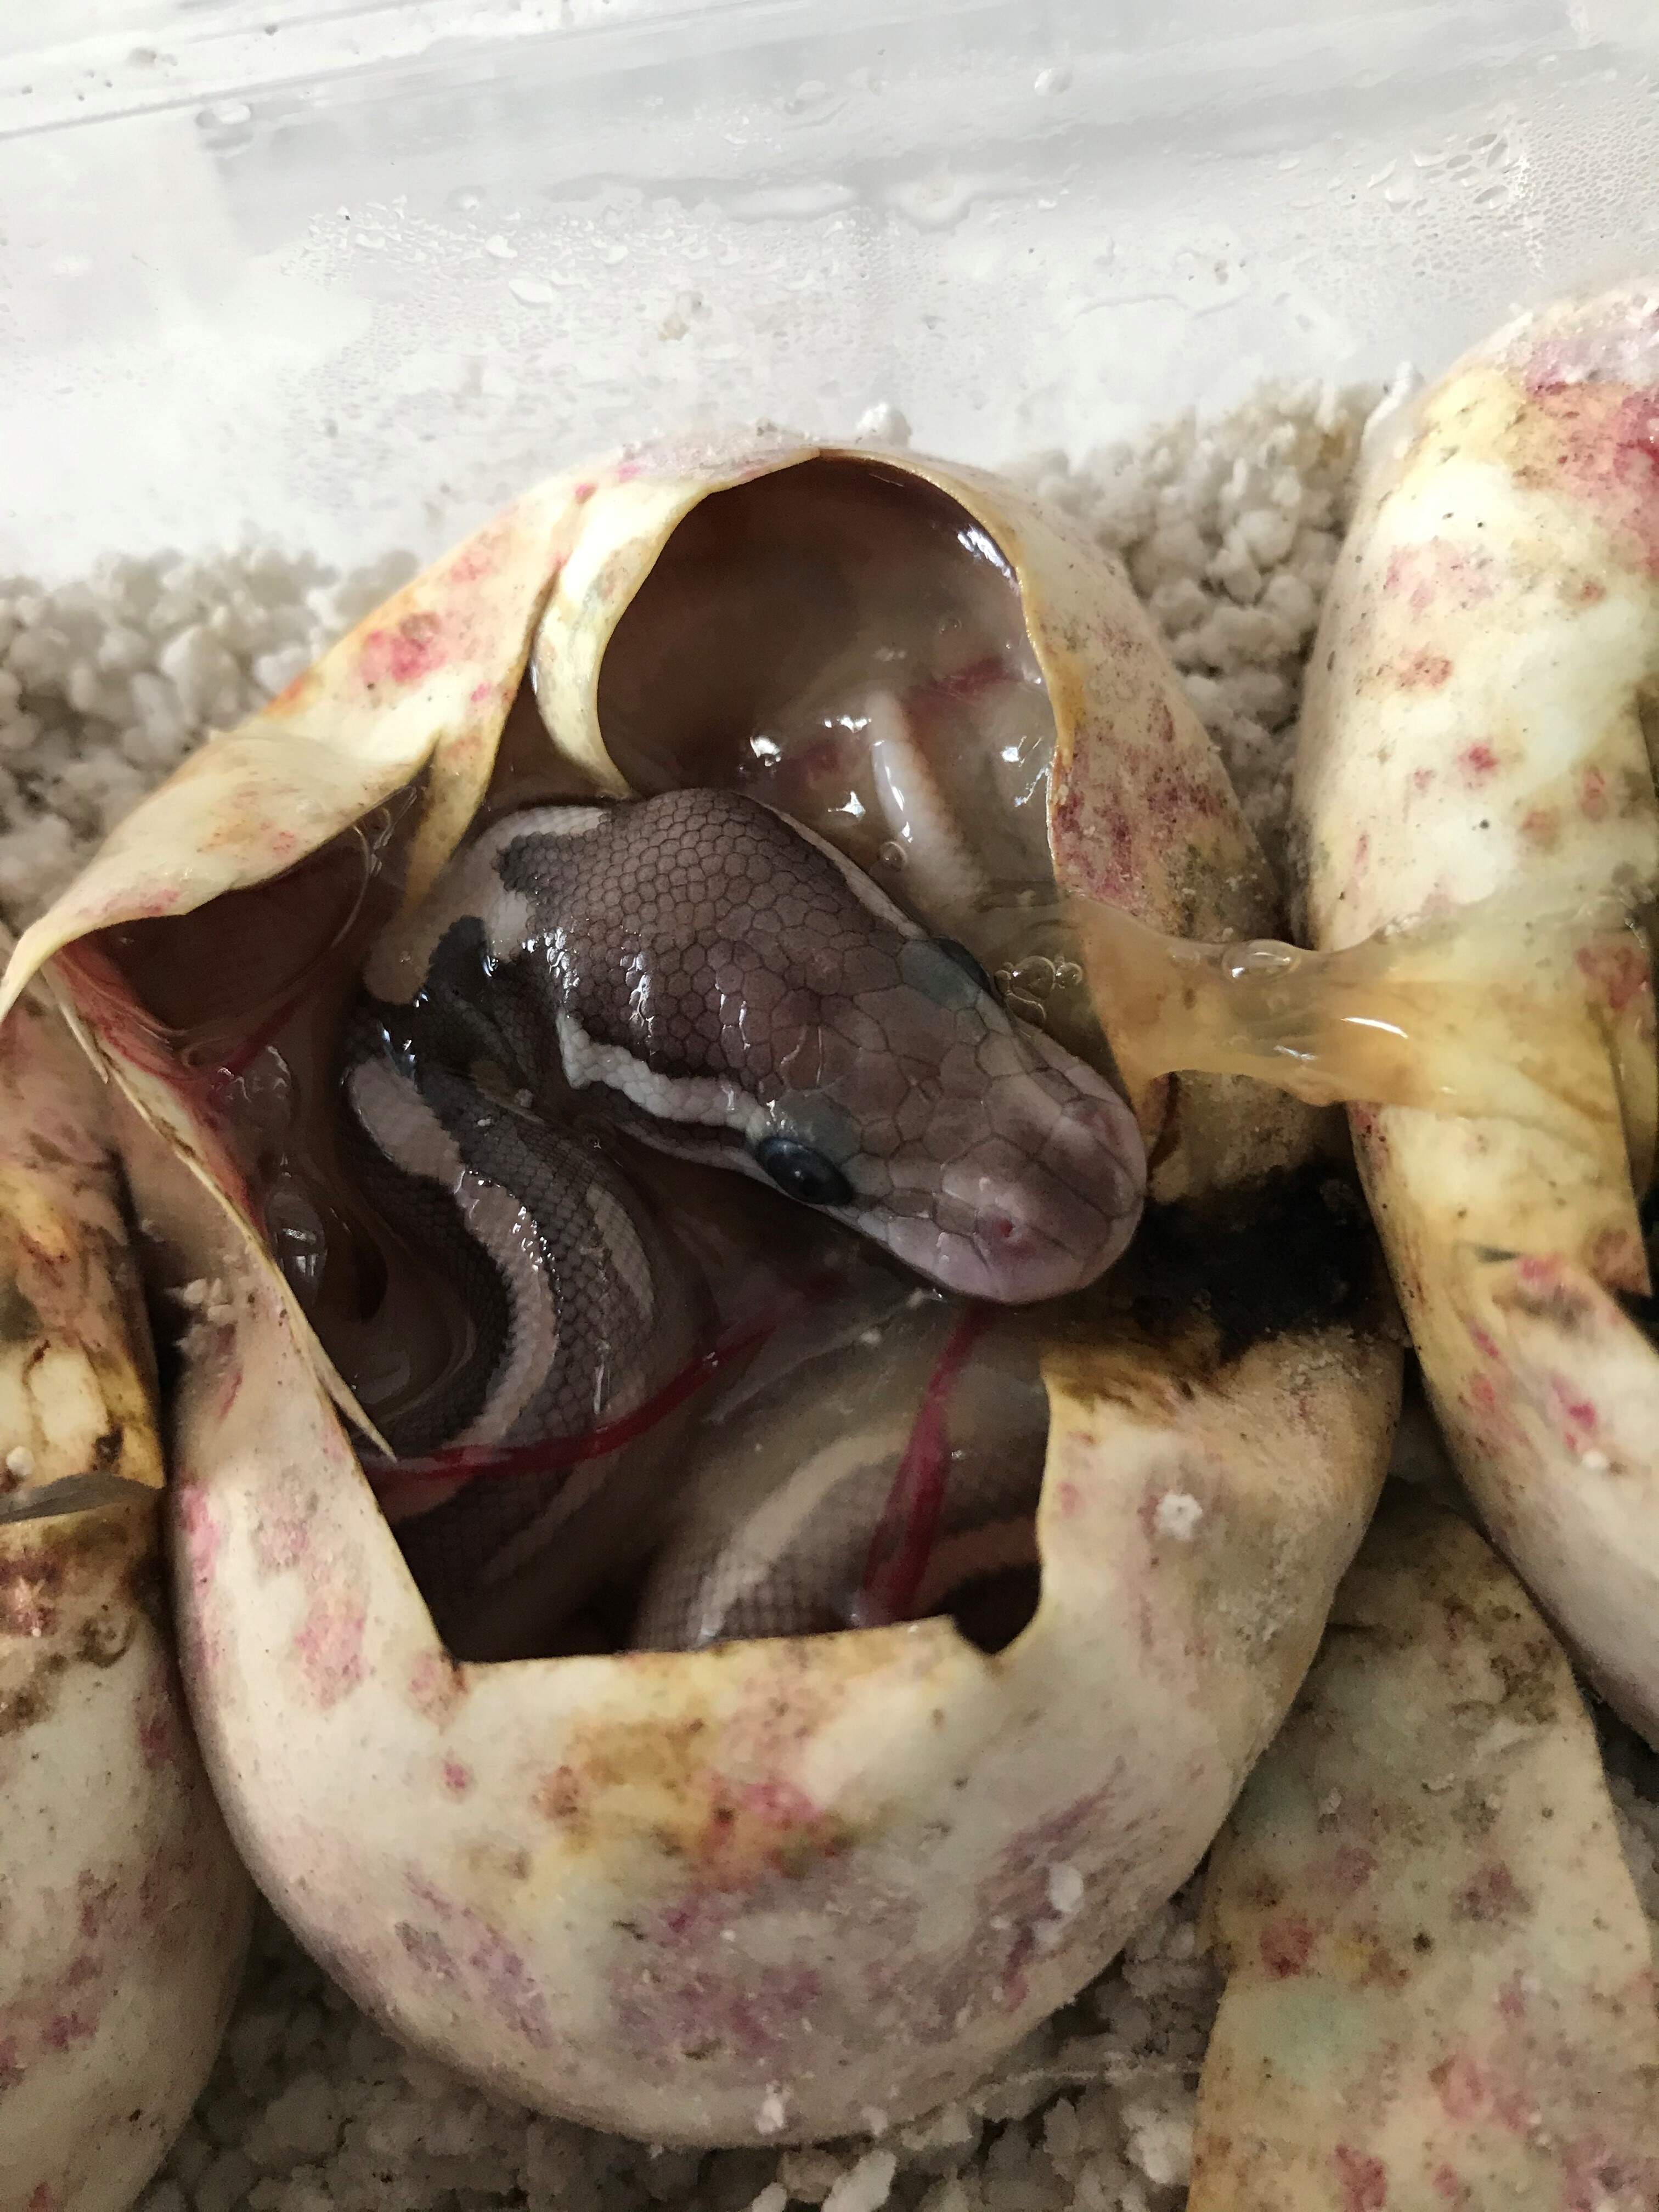 Baby Royal Python leaving the egg